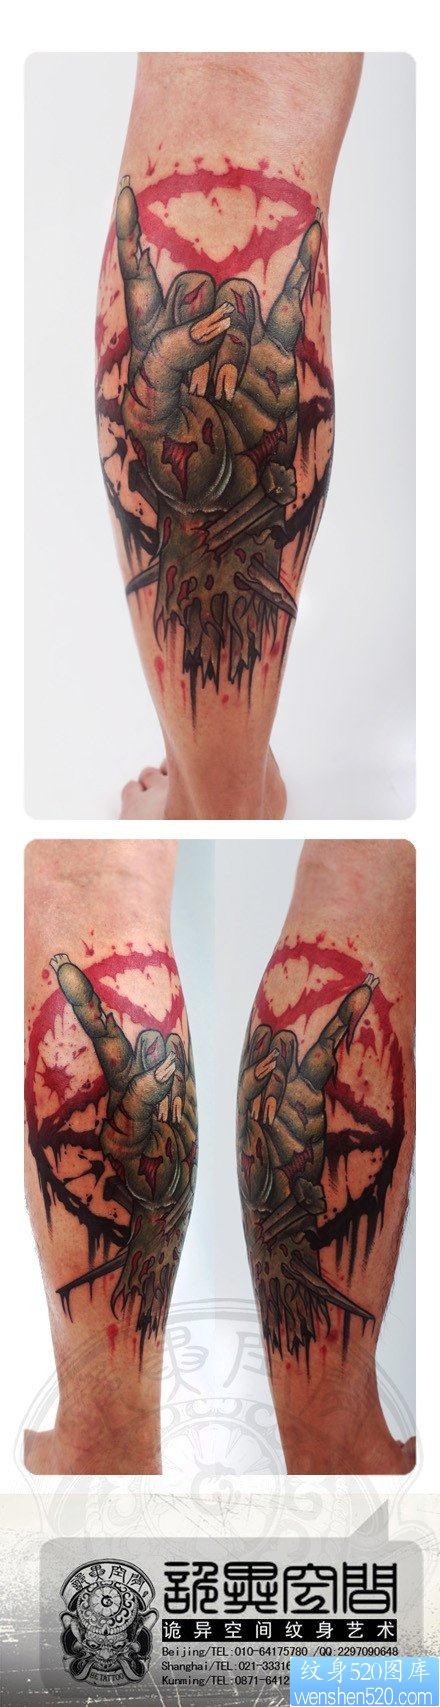 腿部流行很酷的僵尸手纹身图片